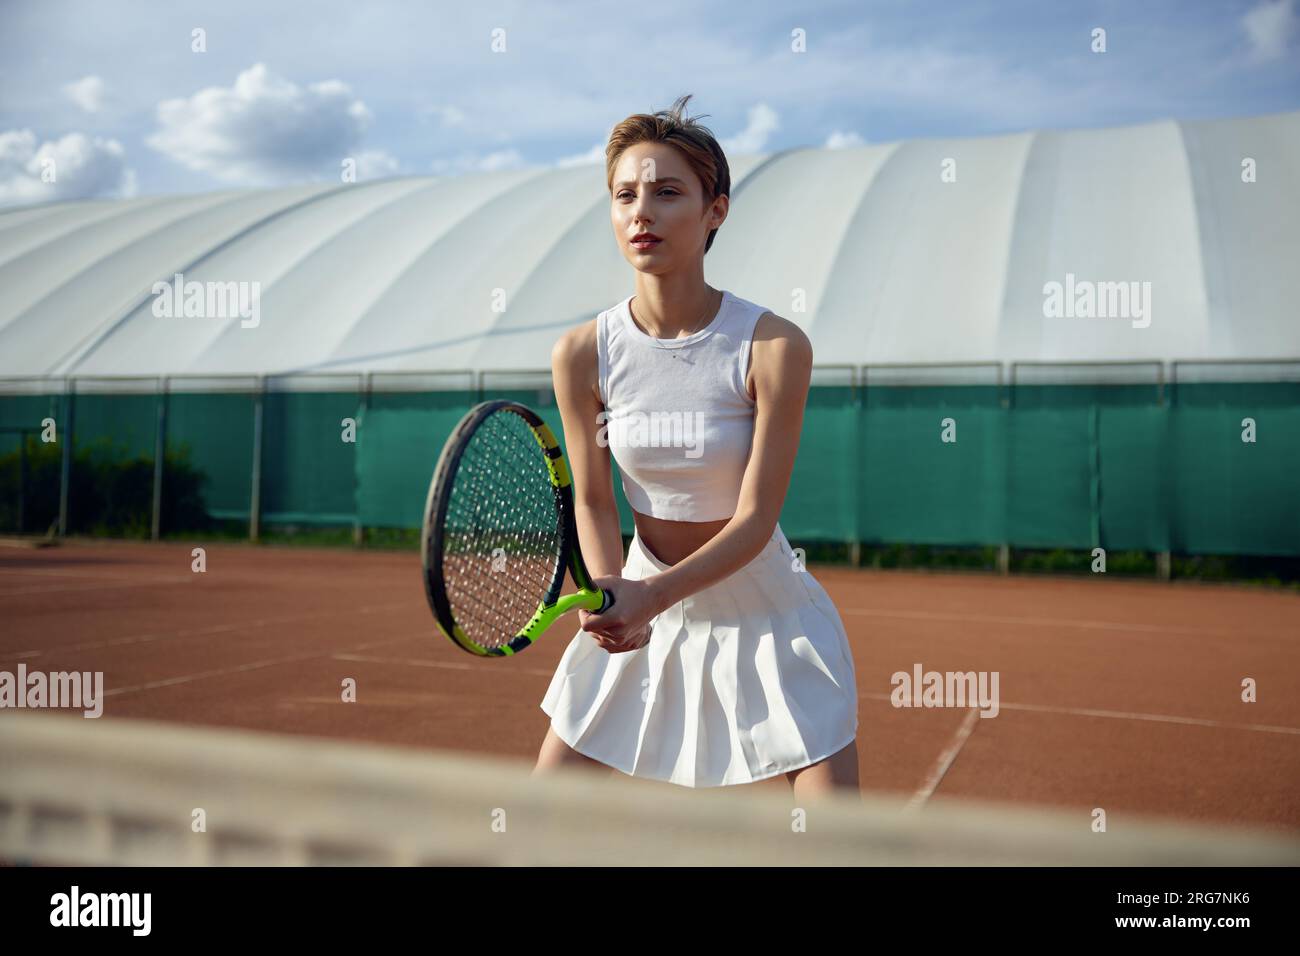 Vue de face d'une joueuse de tennis de confiance tenant une raquette Banque D'Images